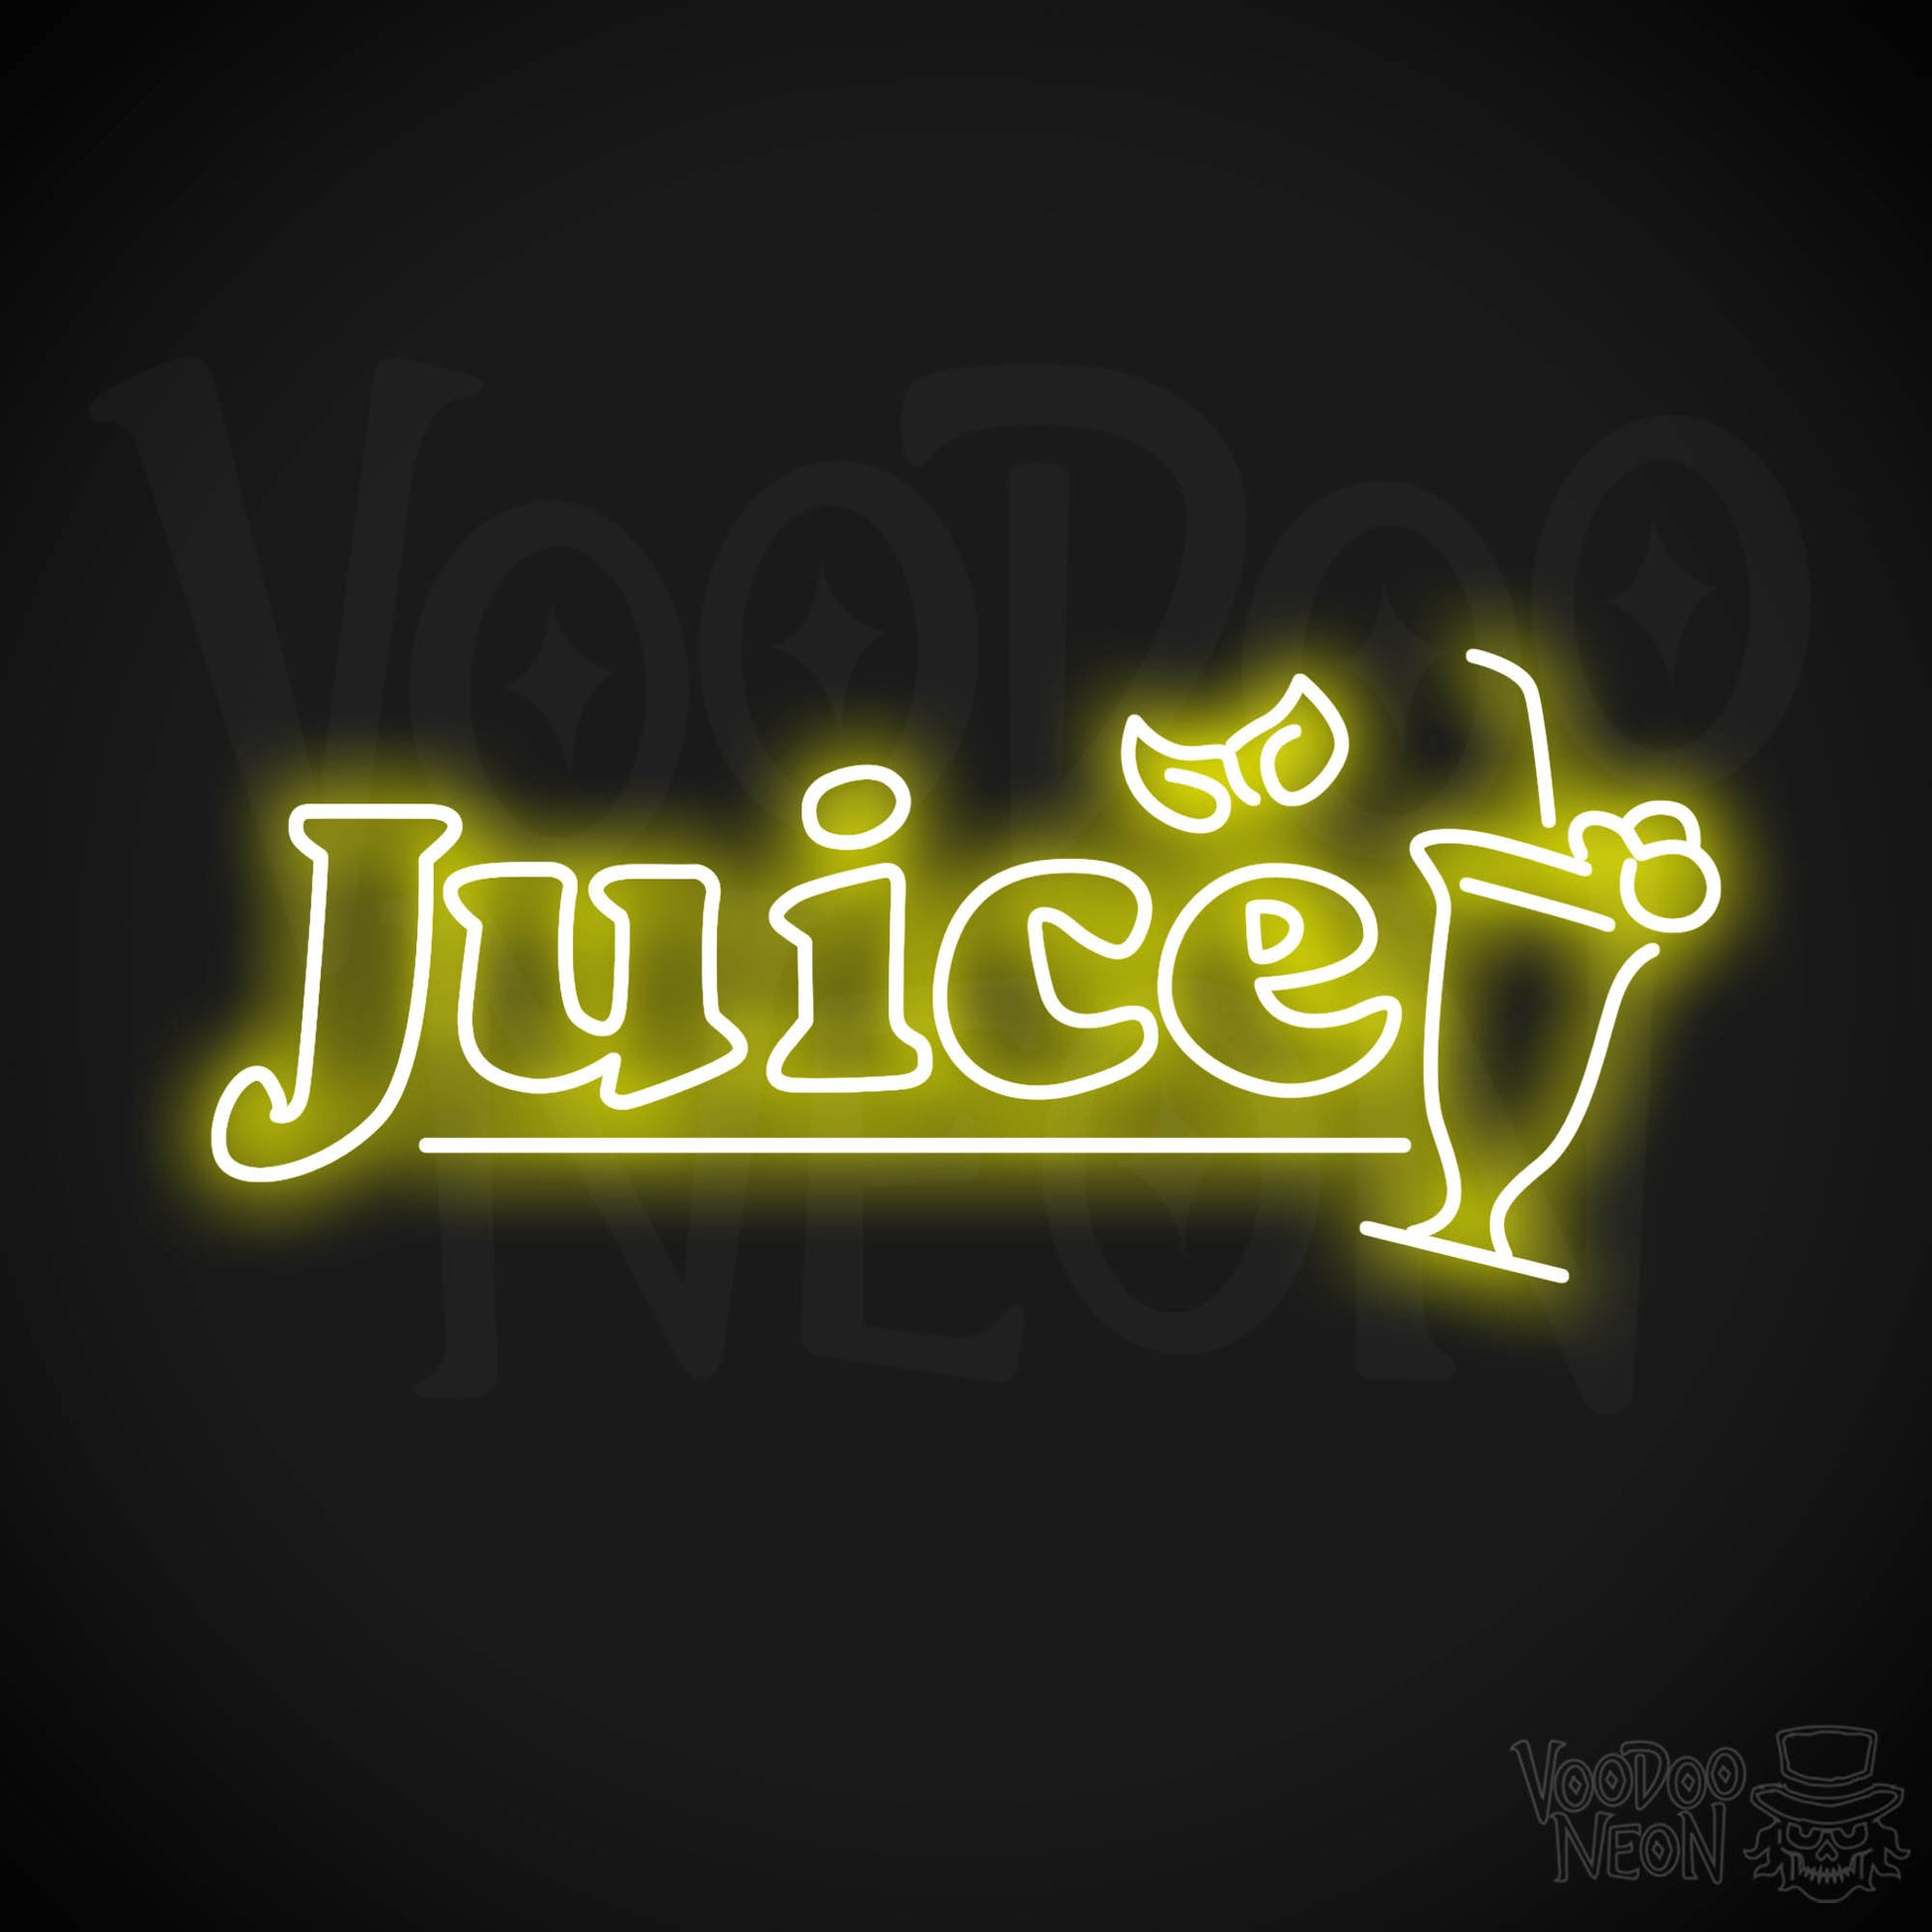 Juice LED Neon - Yellow